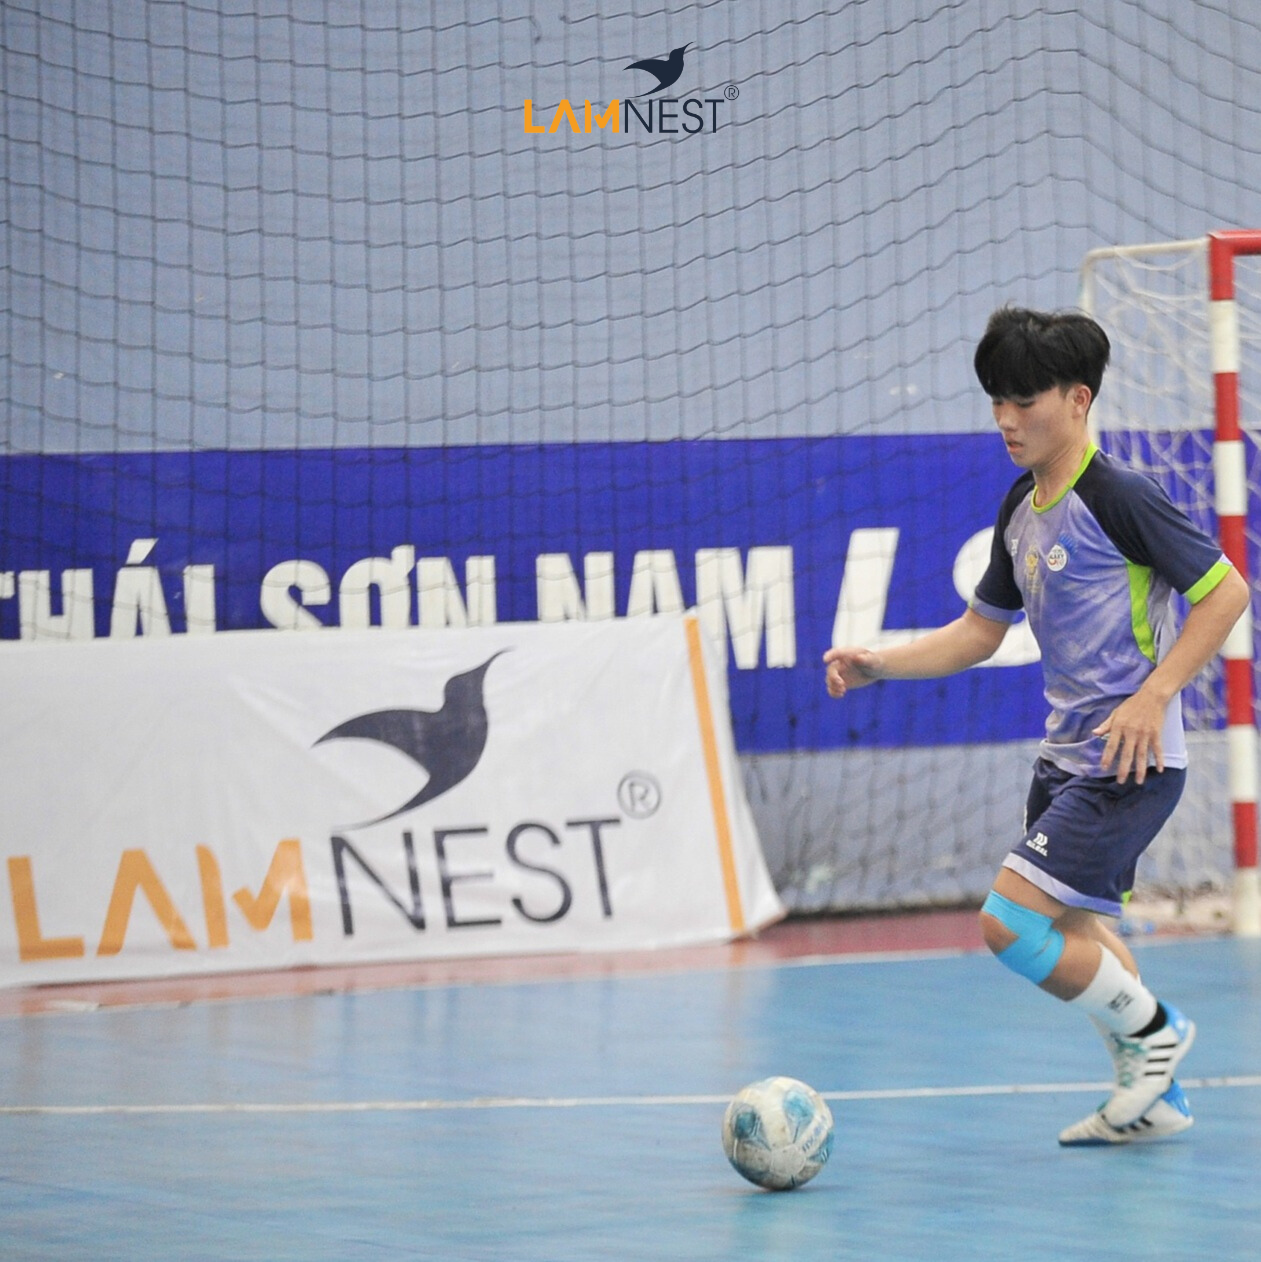 Yến Sào Lamnest sát cánh cùng Giải thể thao FI Futsal Championship lần thứ 17 - LAMNEST CUP 2023